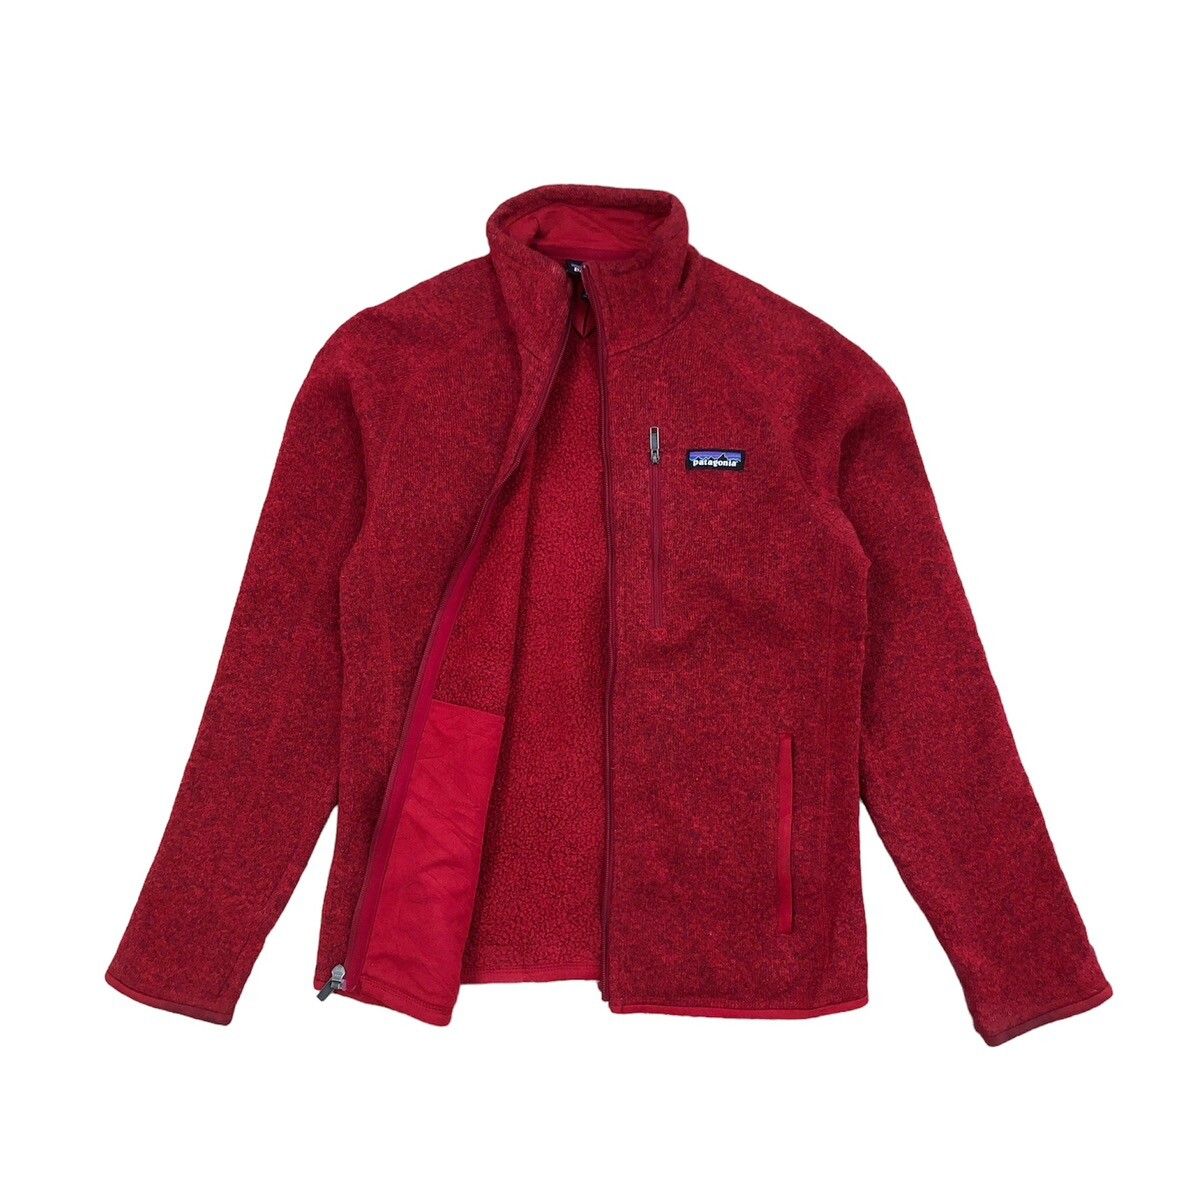 Vintage - Patagonia Fullzip Fleece Jacket - 2